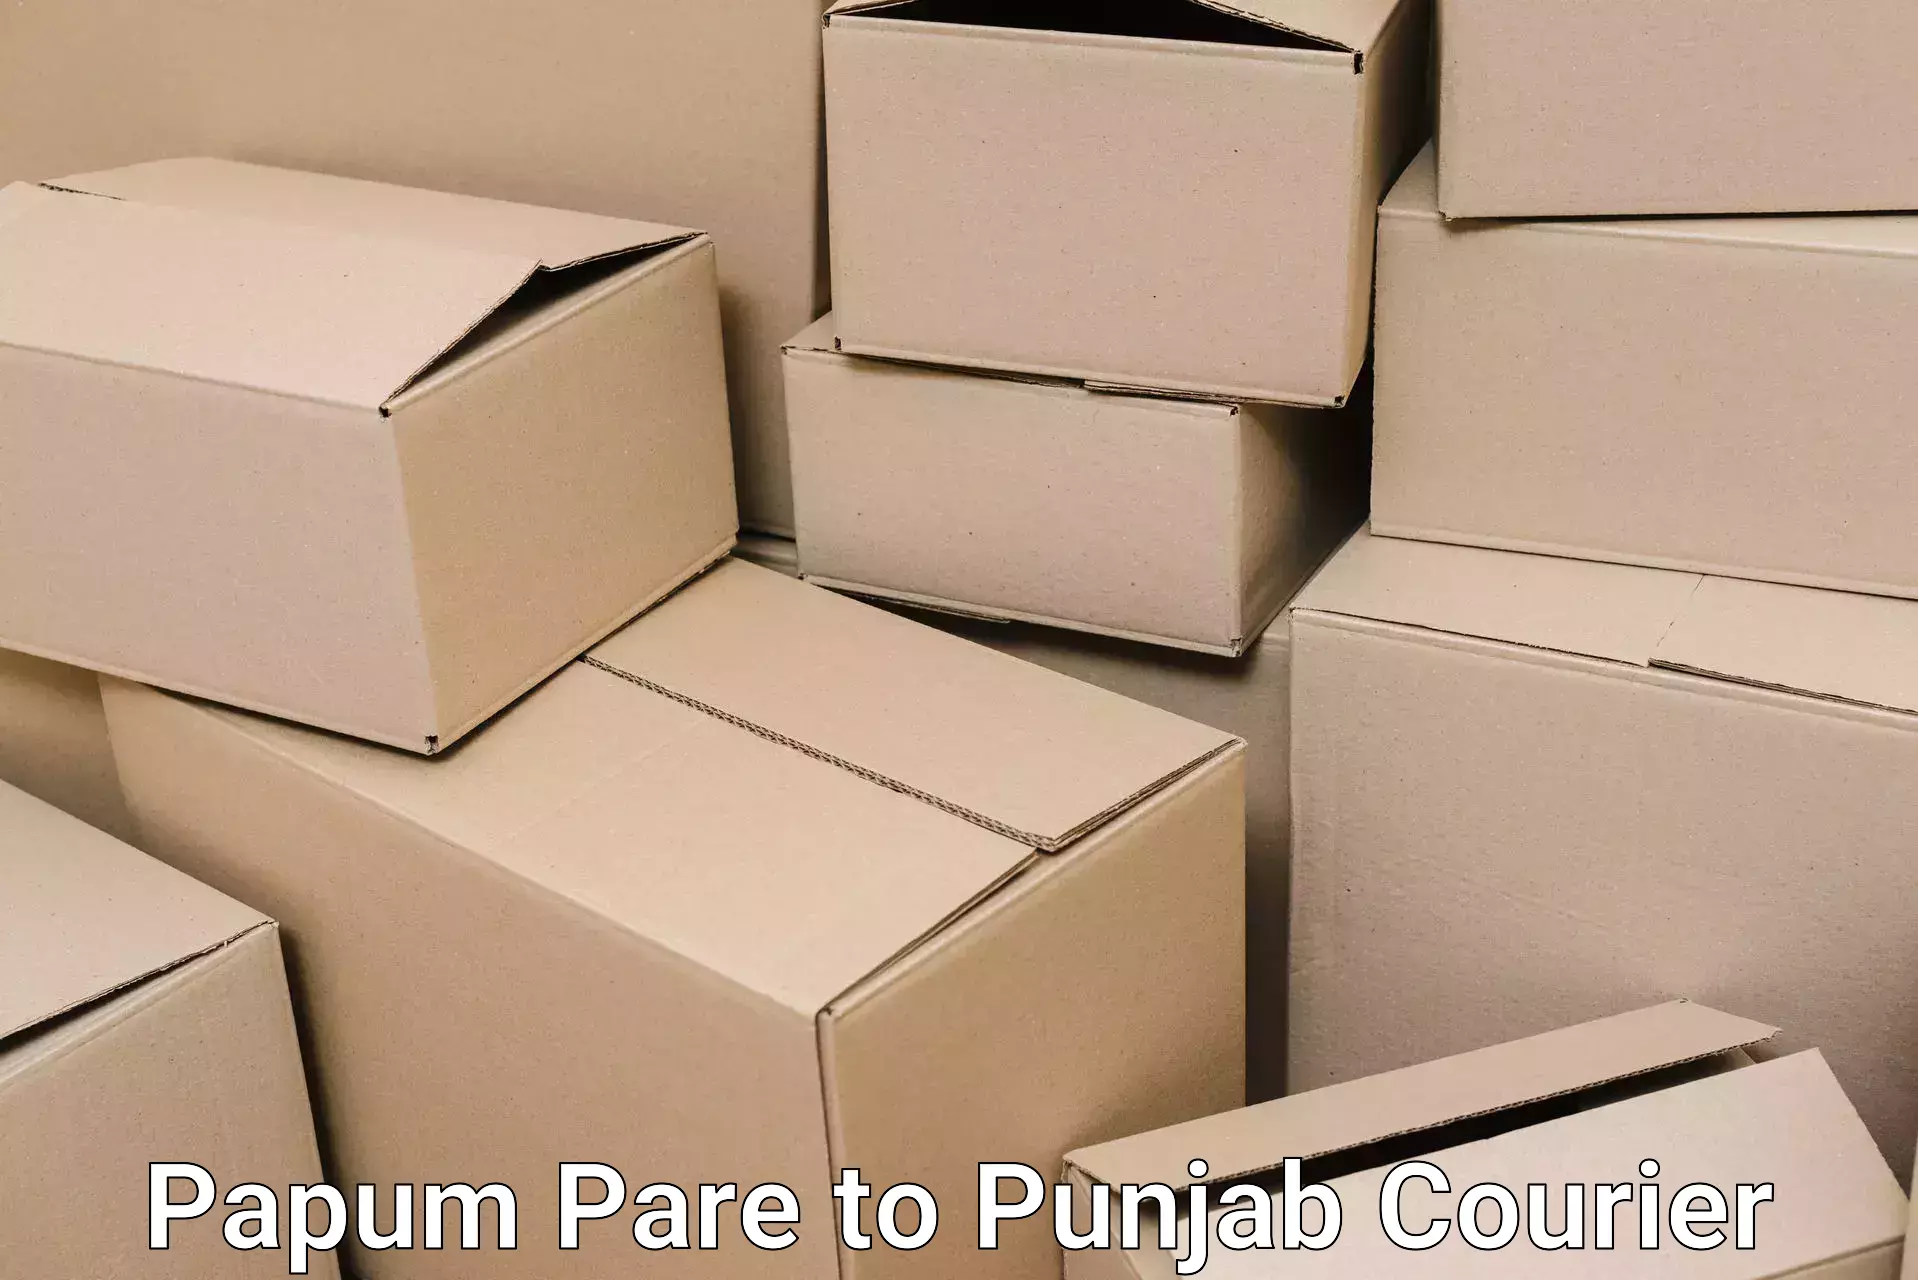 Reliable furniture transport Papum Pare to Patti Tarn Tara